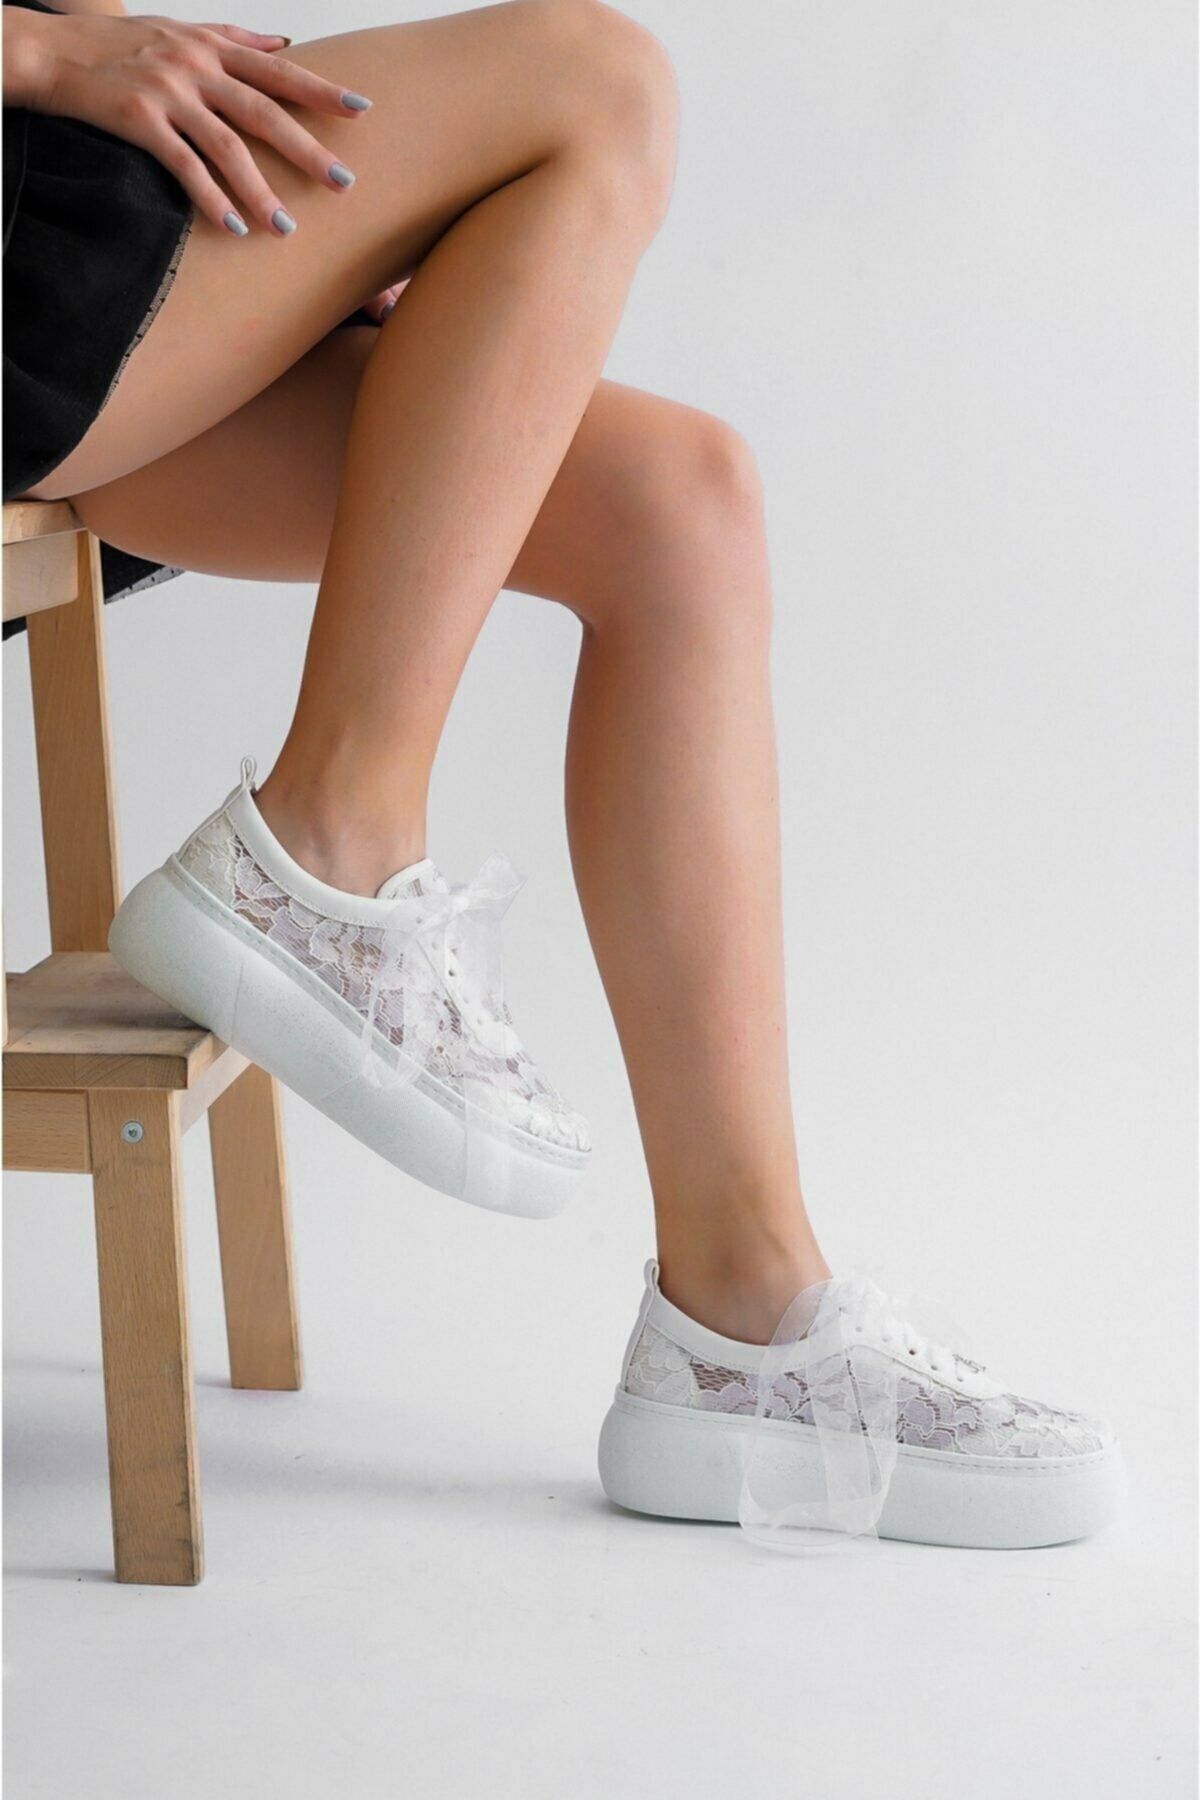 Ayakkabı Tutkusu Stilo ® Kadın Spor Gelin Ayakkabısı Dantel Tül Kurdele  Aşırı Rahat Abiye Spor Gelin ayakkabısı